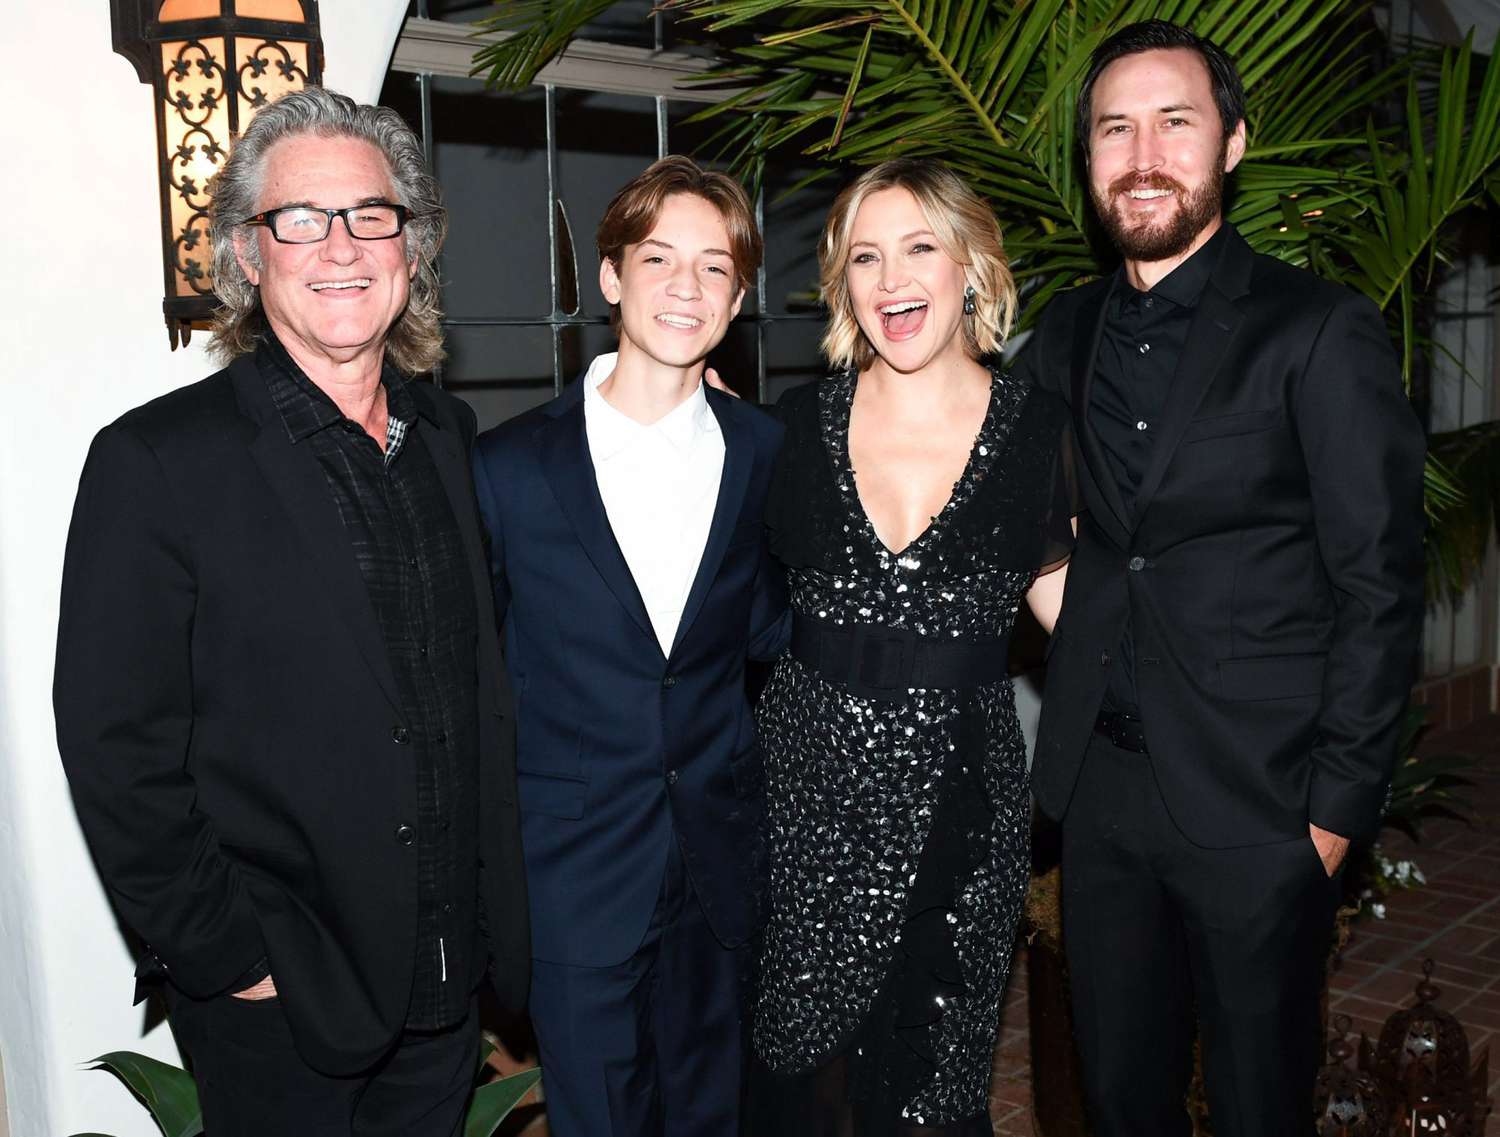 Michael Kors x Kate Hudson dinner, Inside, Los Angeles, USA - 07 Nov 2018